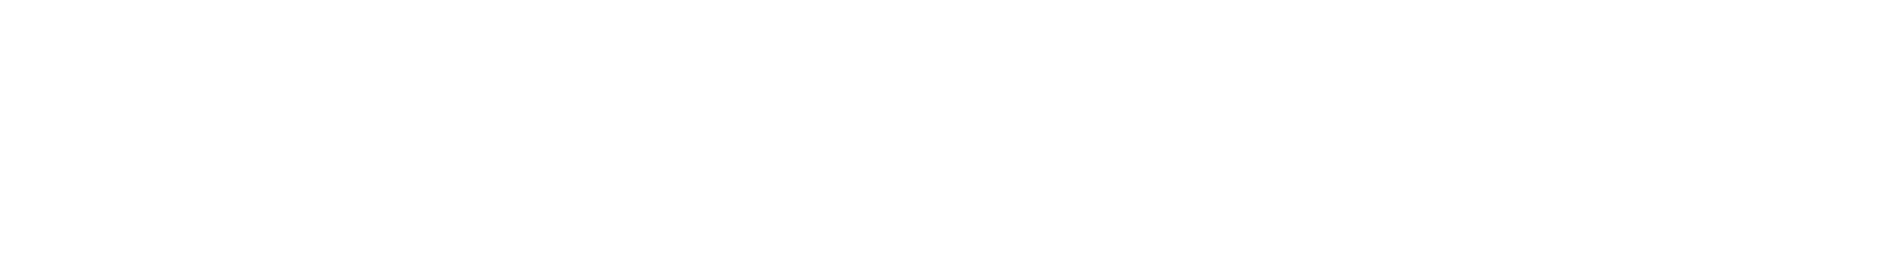 Hancocks Cycles - Bike Shop Cheshunt